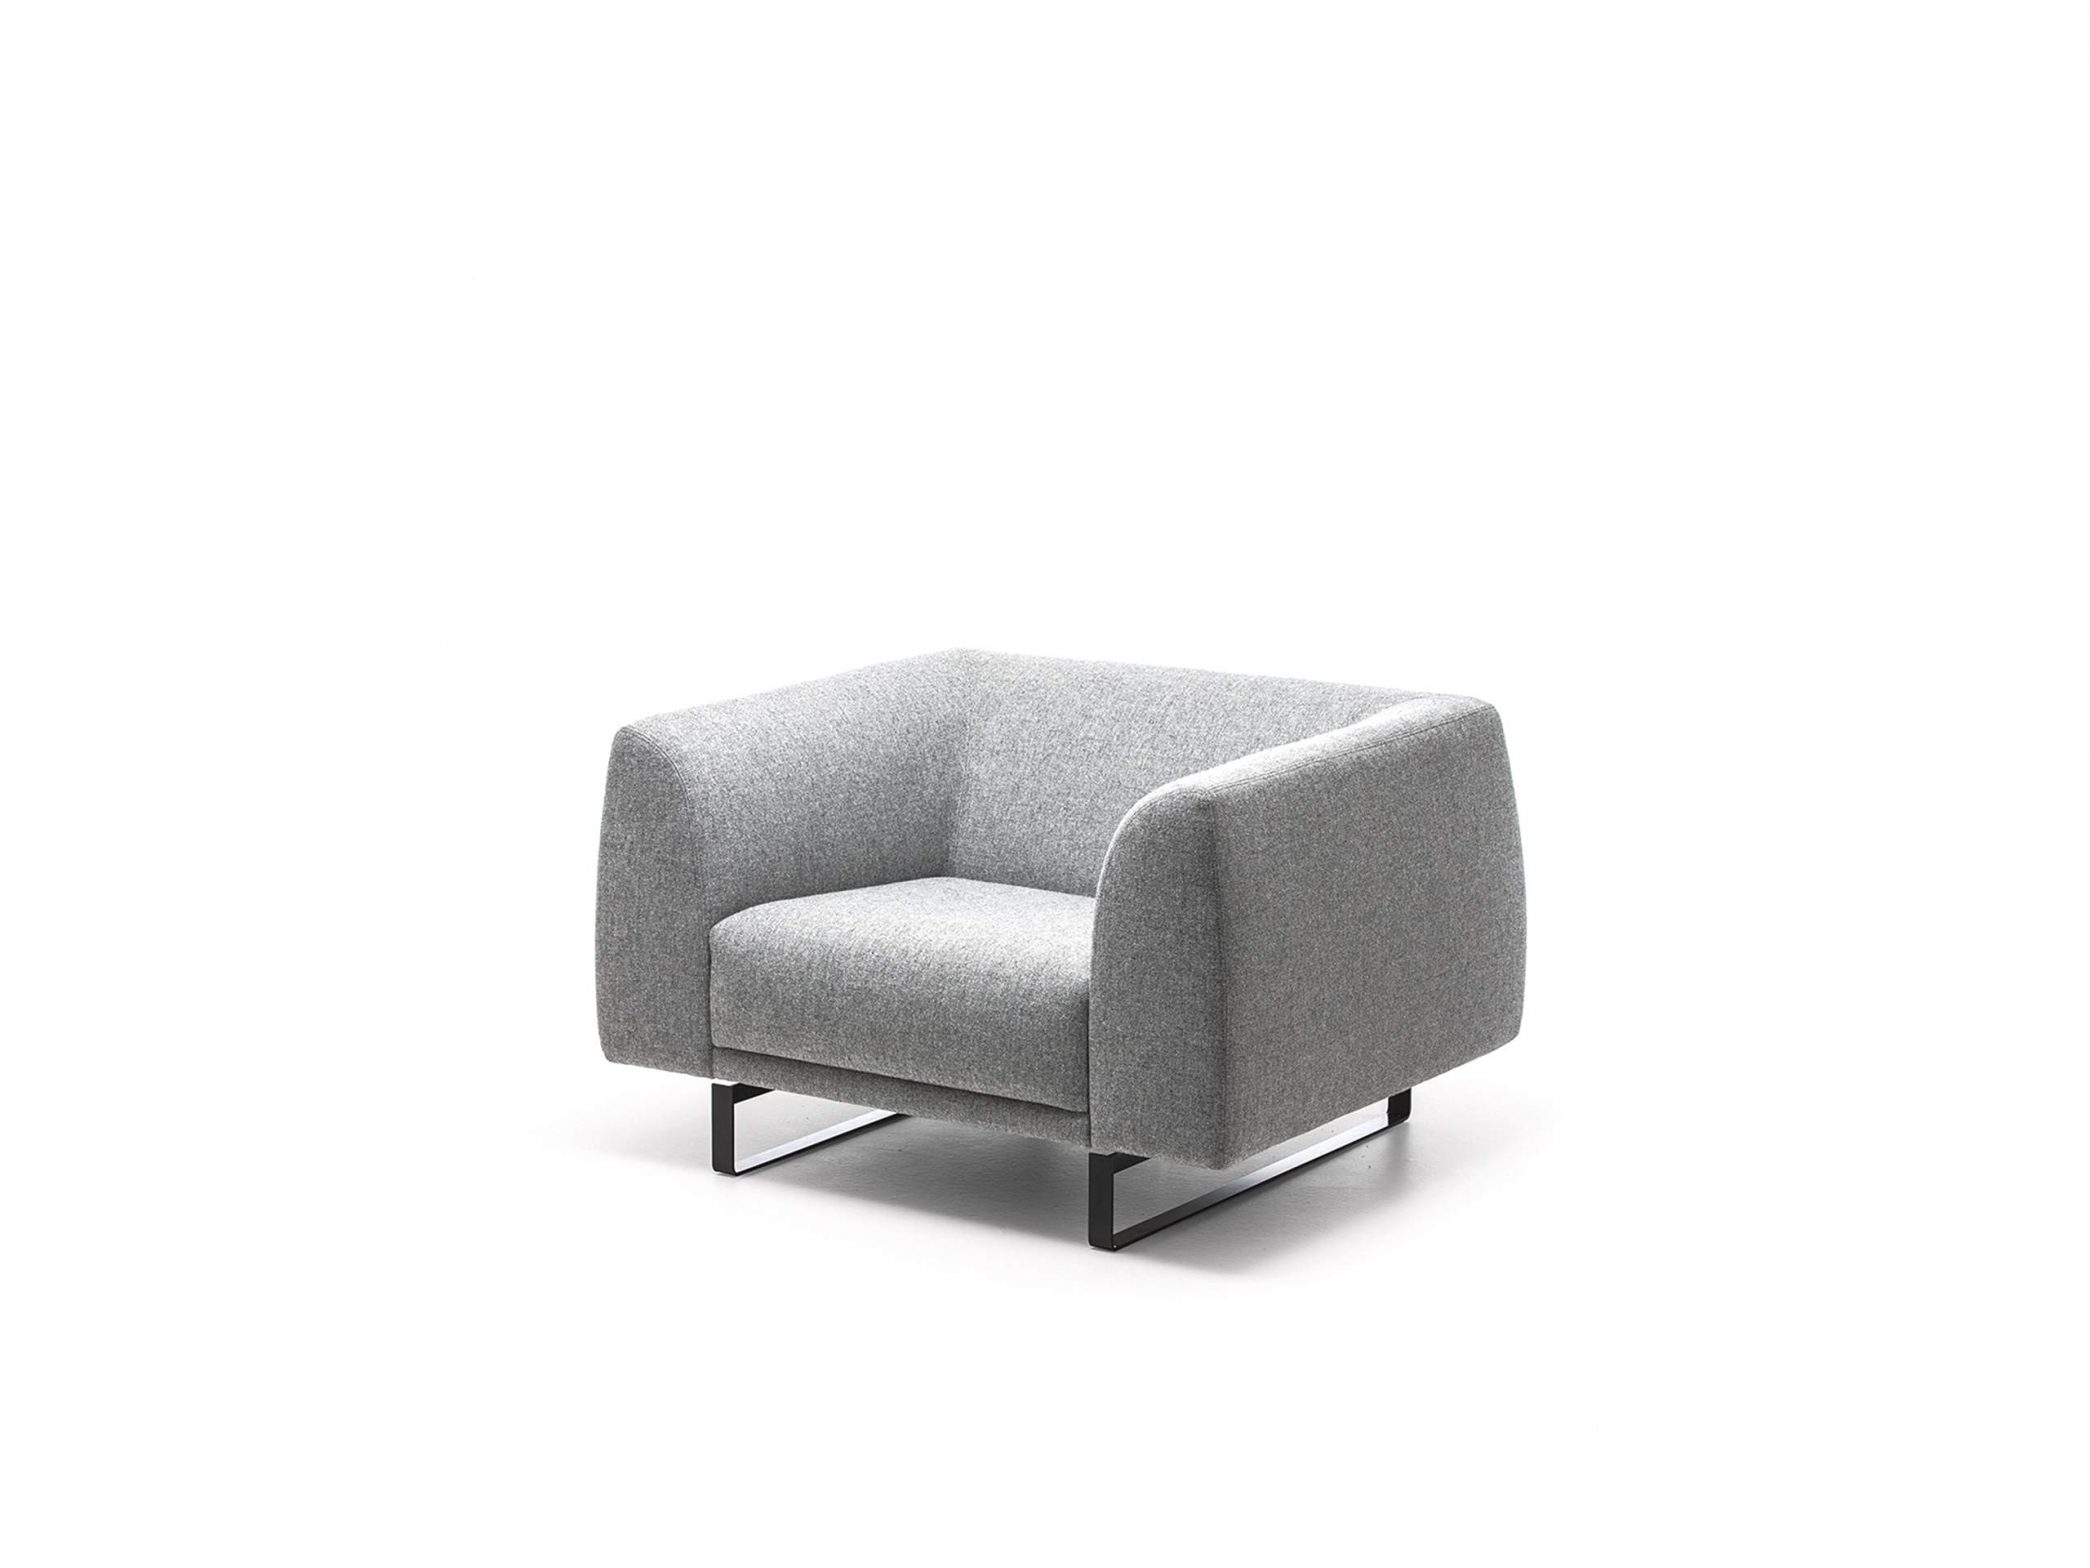 tailor-armchair-landscape-2090x1568